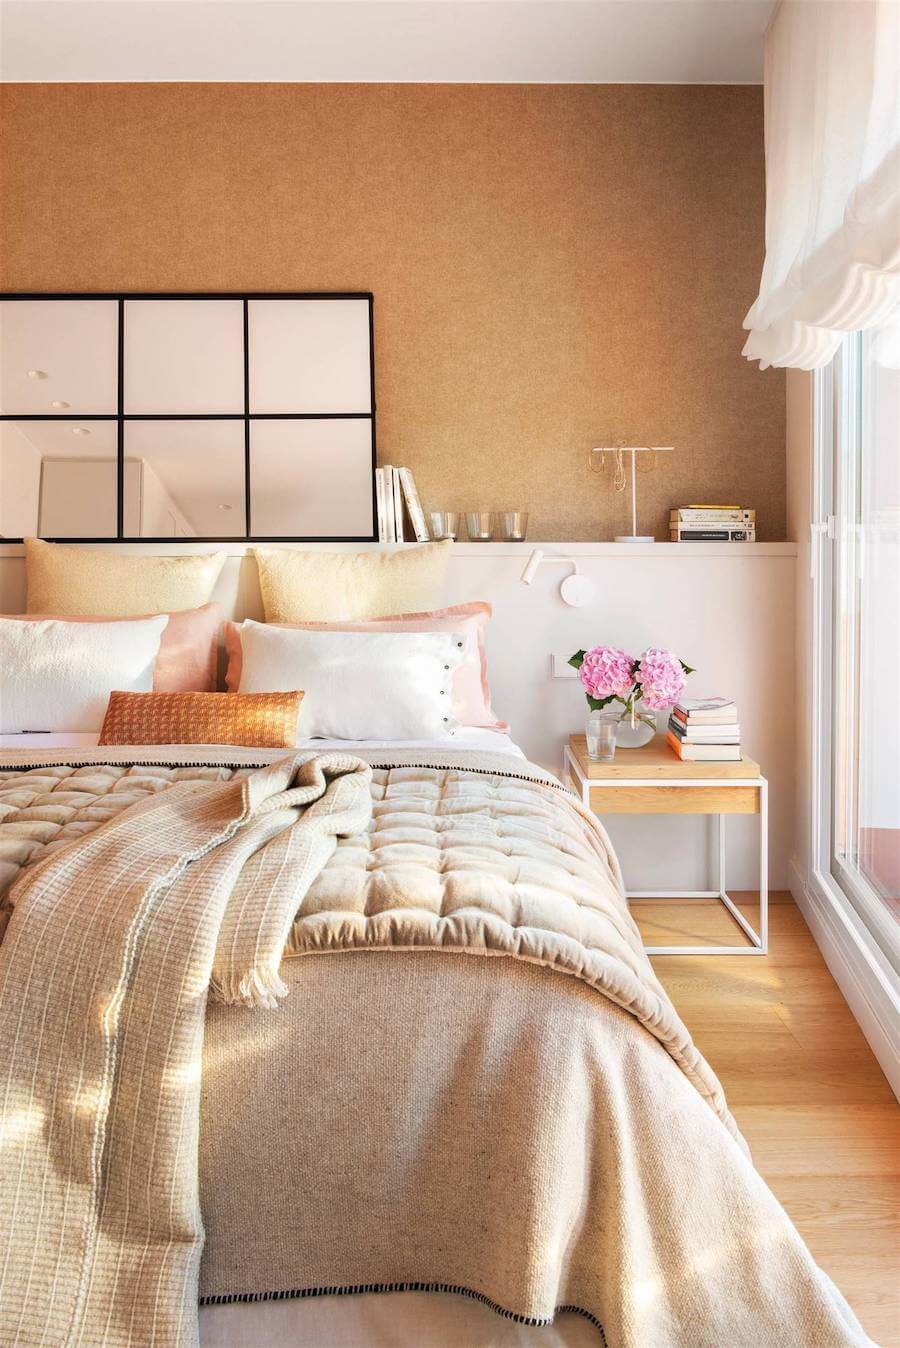 Espejo con marco negro sobre el respaldo blanco de una cama con juegos de sábana color beige y cojines blancos, rosados y amarillos. El espejo está apoyado sobre una pared color arena.